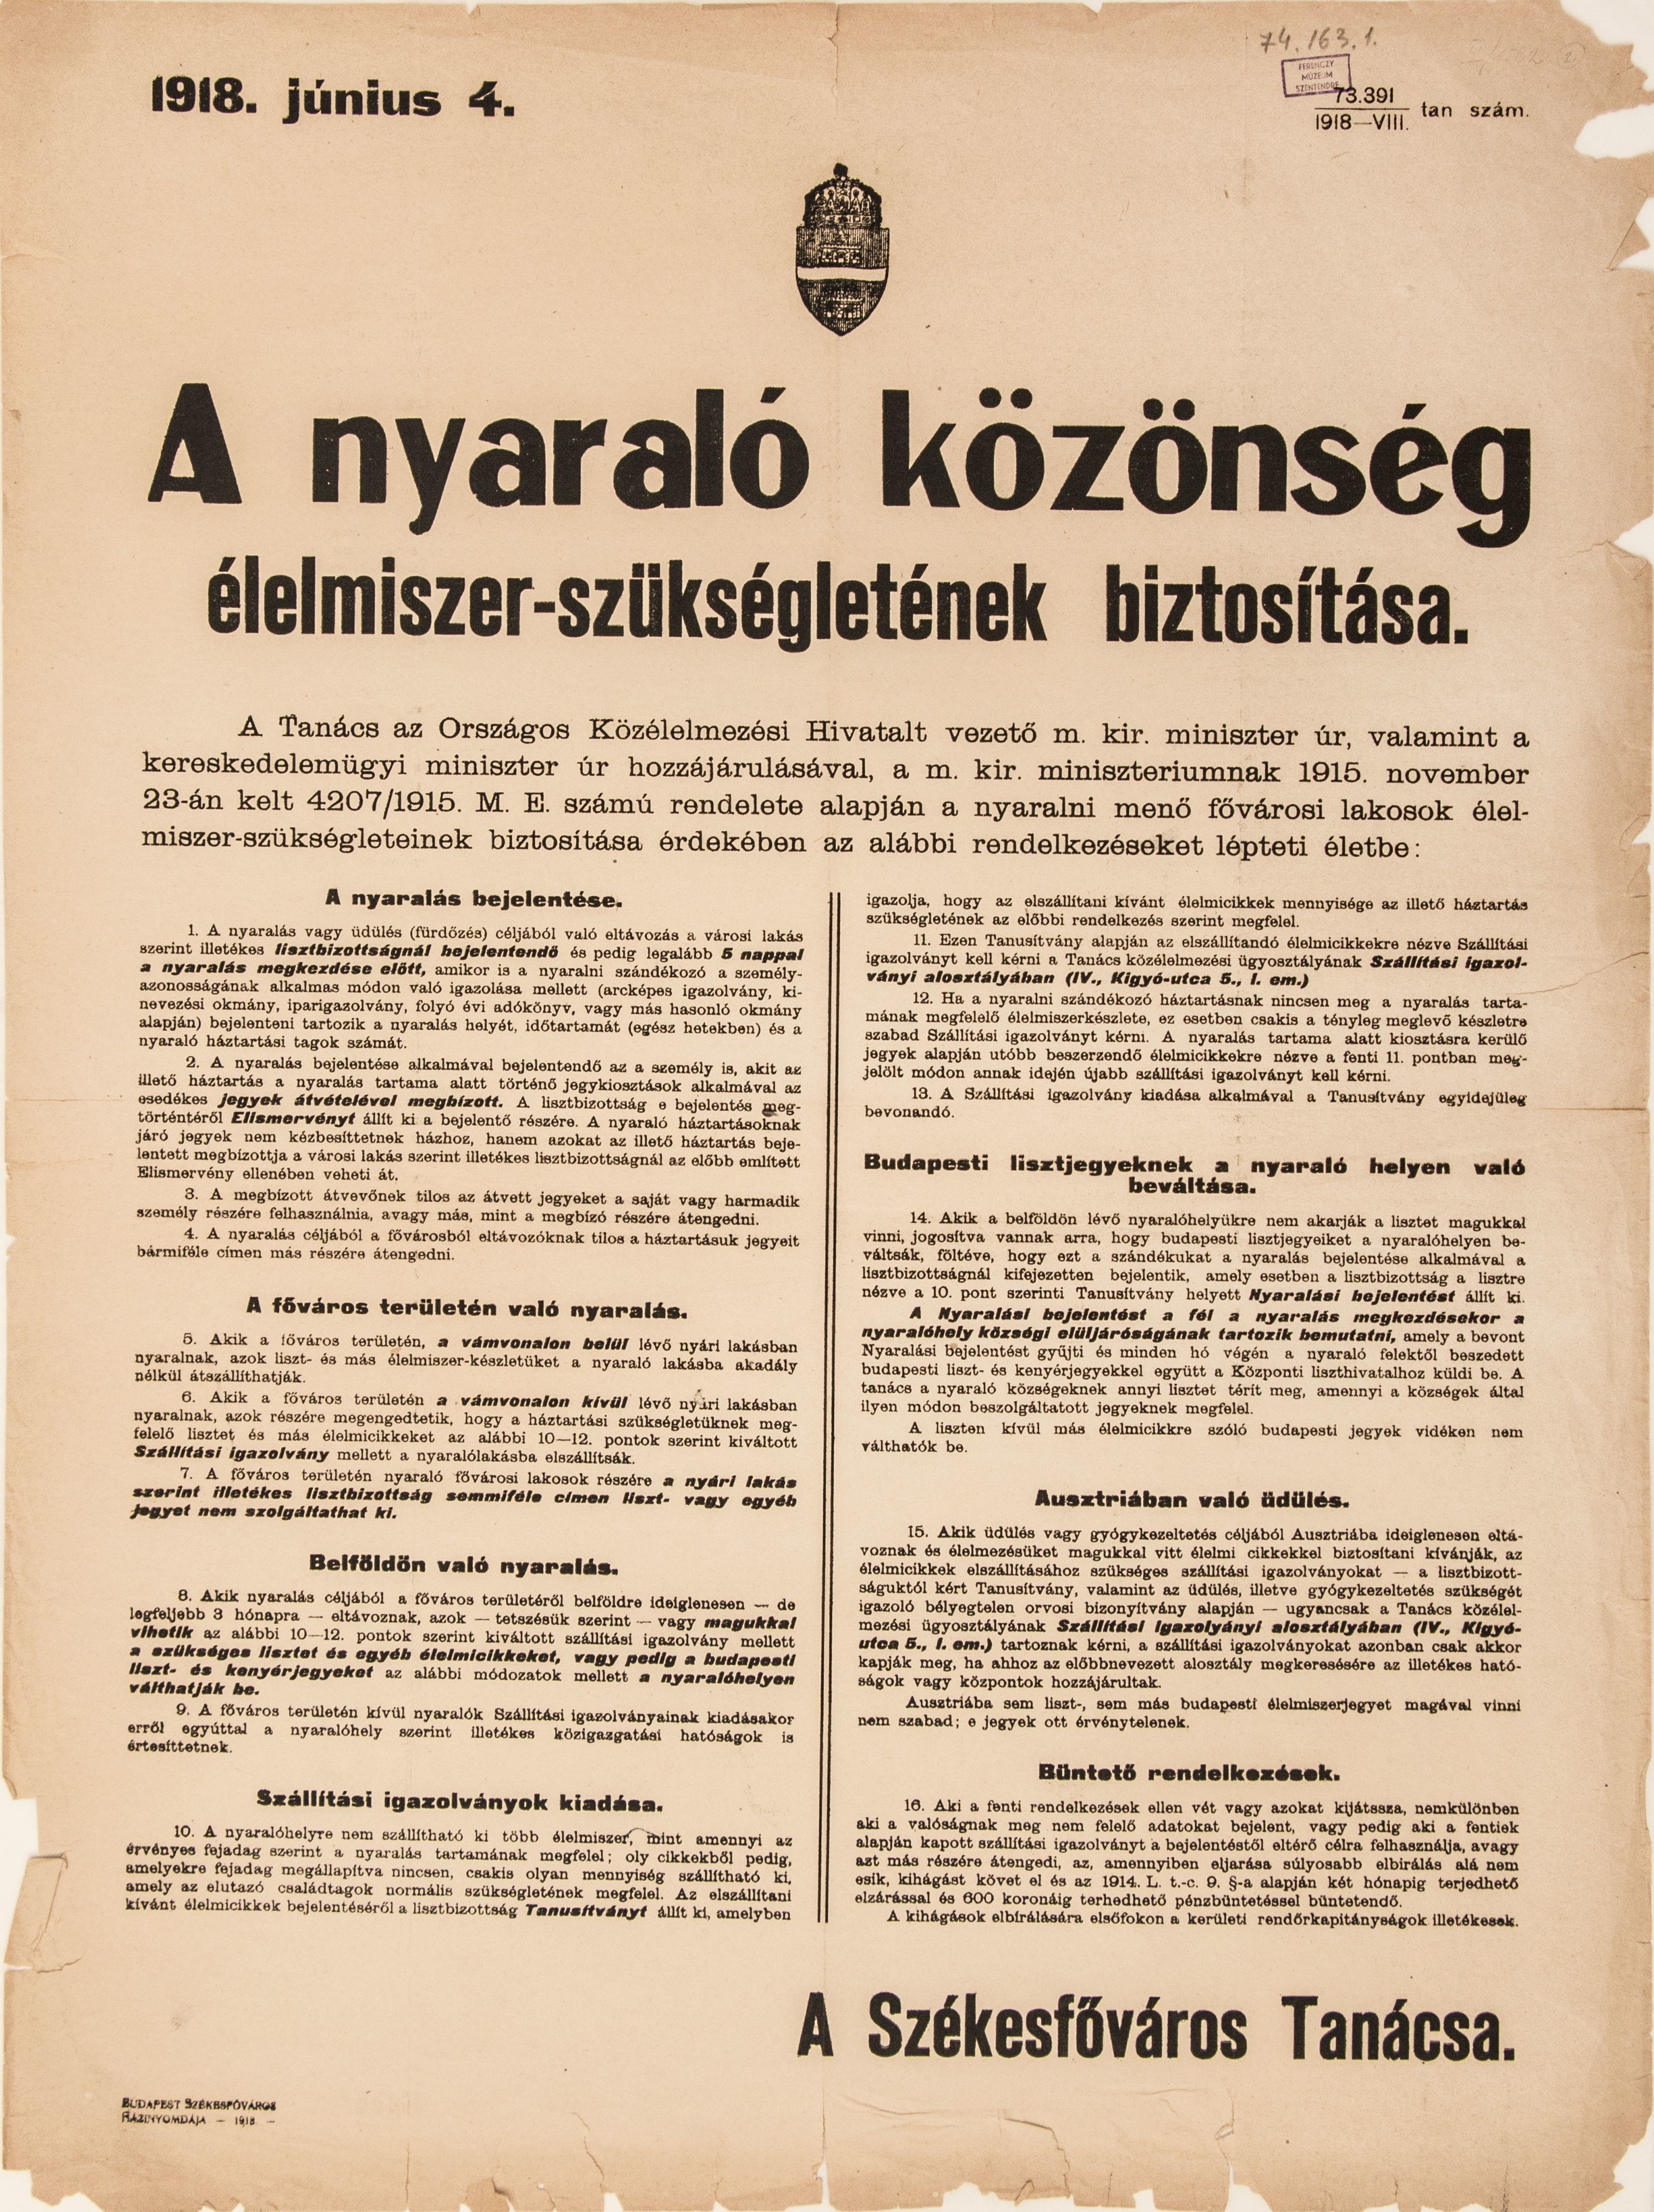 A nyaraló közönség élelmiszerszükségletének biztosítása, 1918.06.04. (Ferenczy Múzeumi Centrum CC BY-NC-SA)